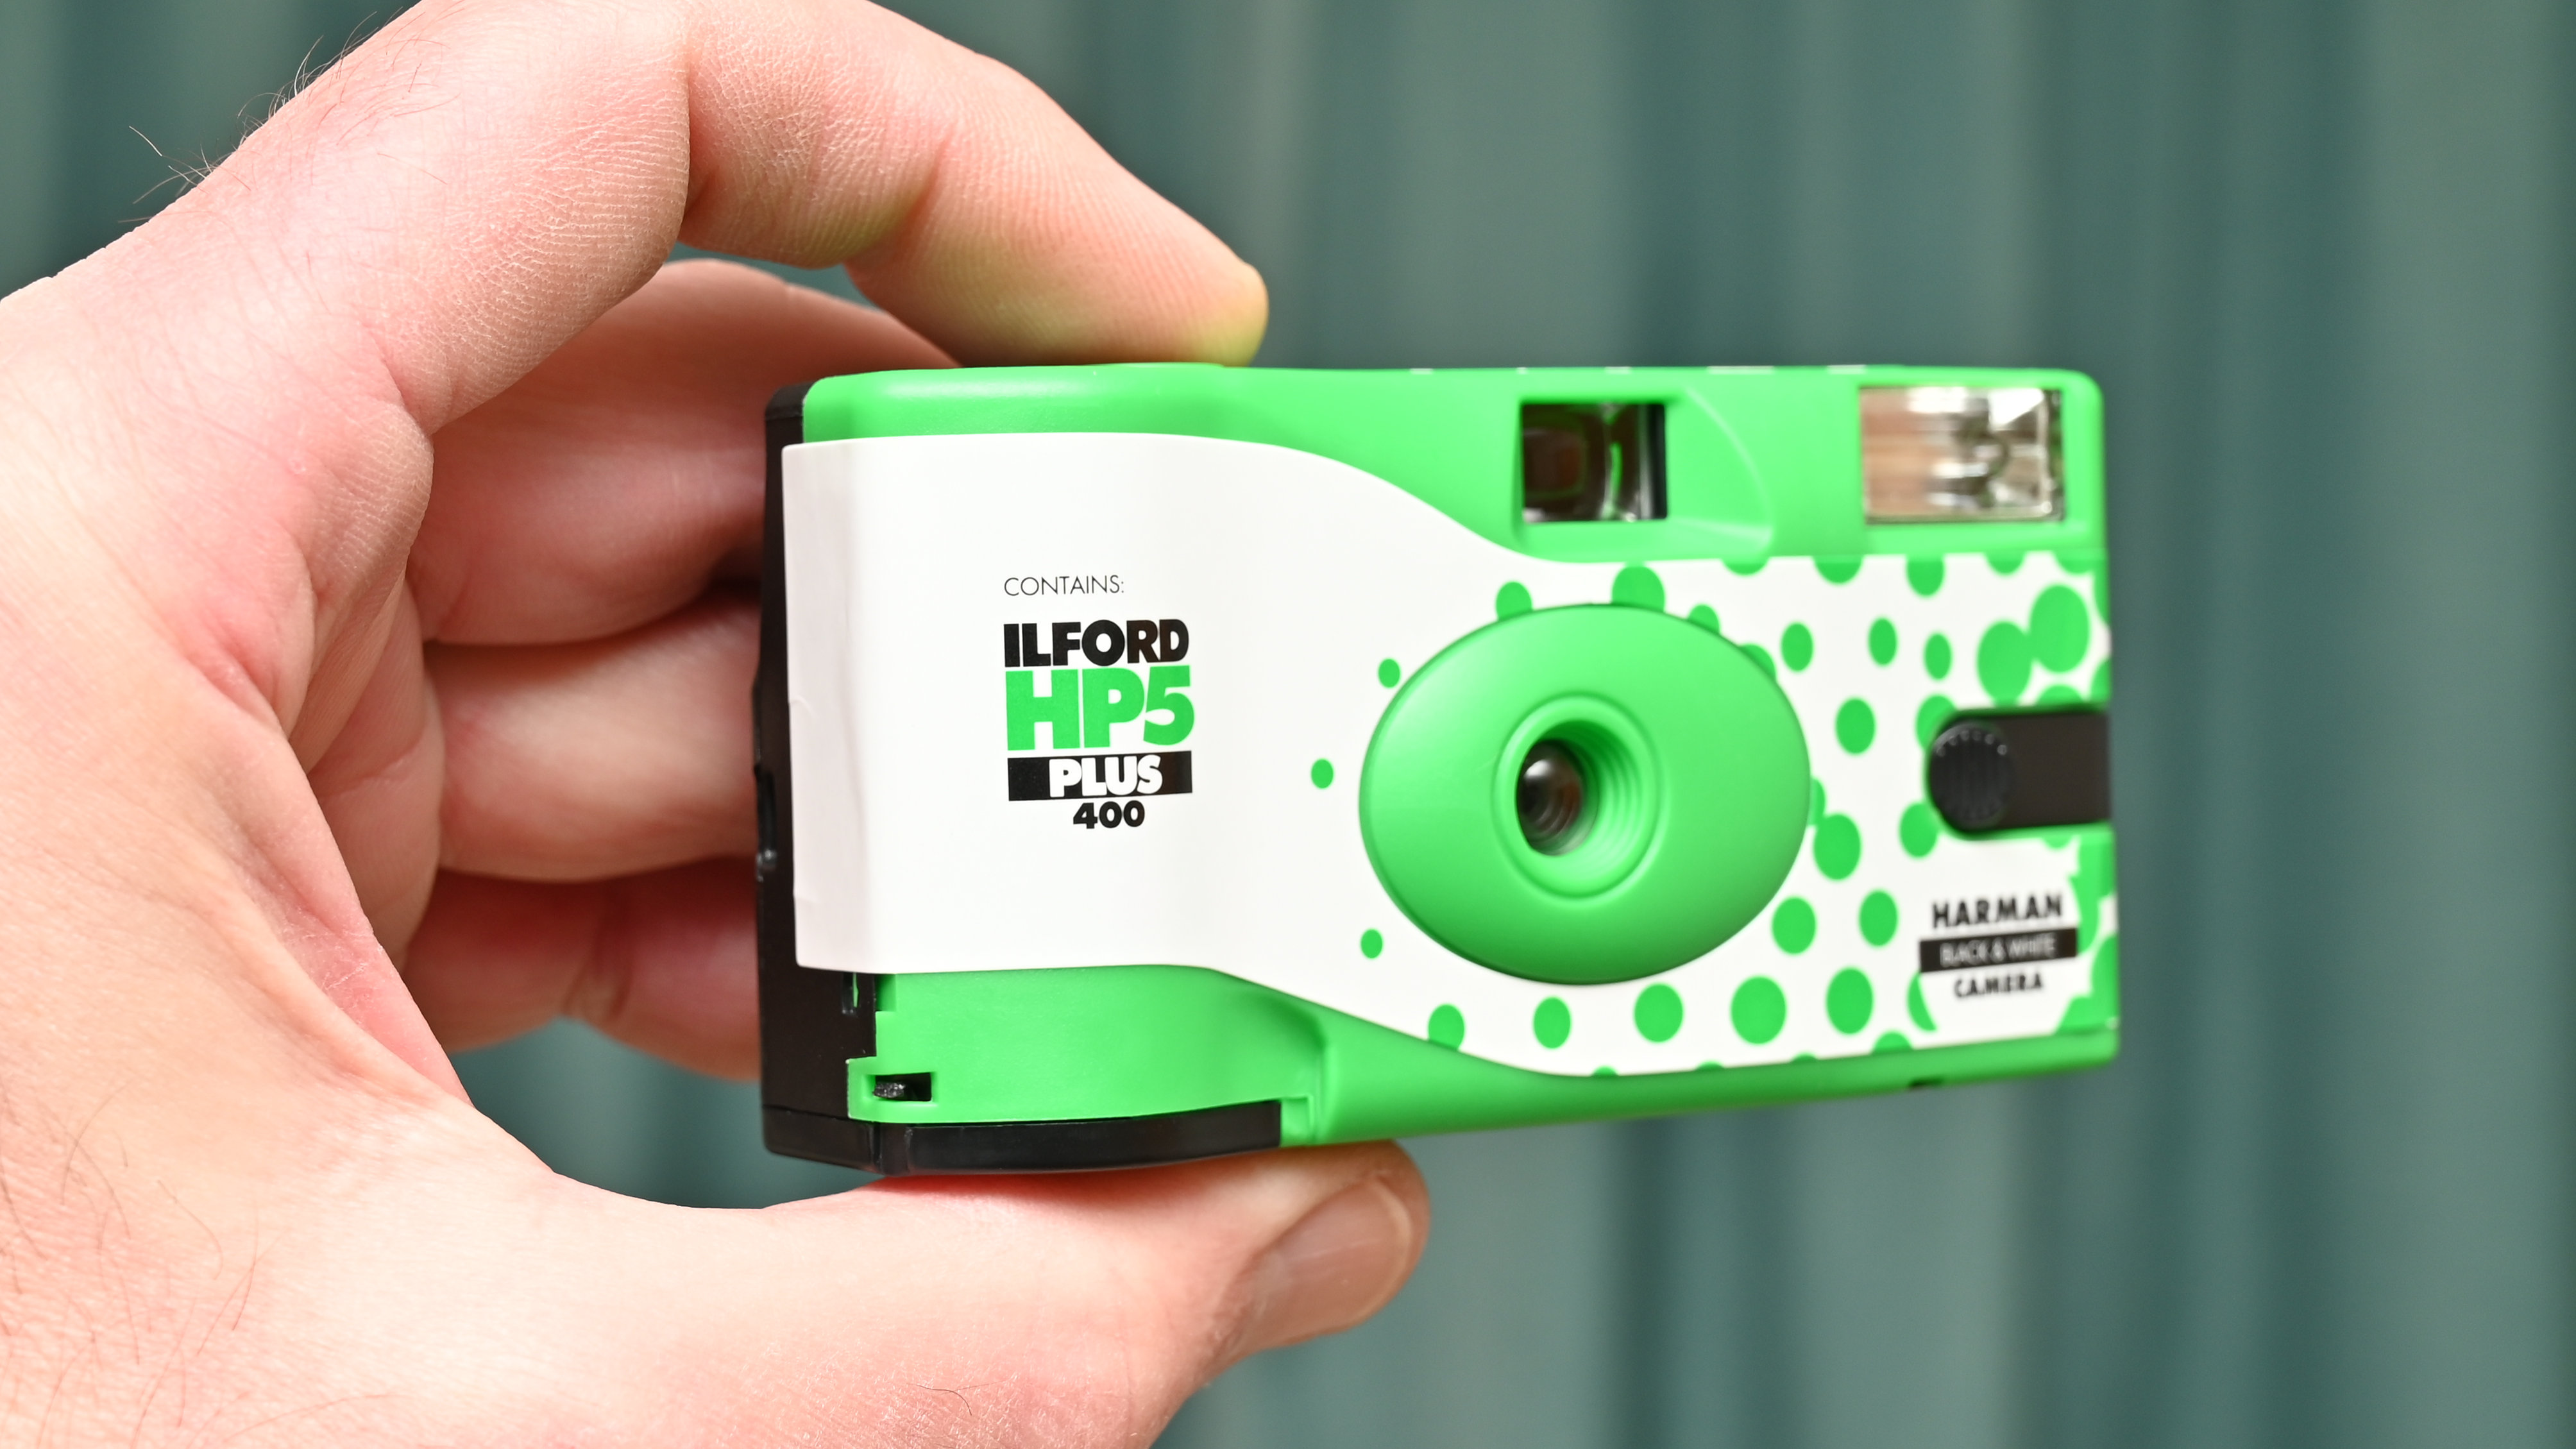 كاميرا هارمان إلفورد HP5 بلس أبيض وأسود للاستخدام الفردي